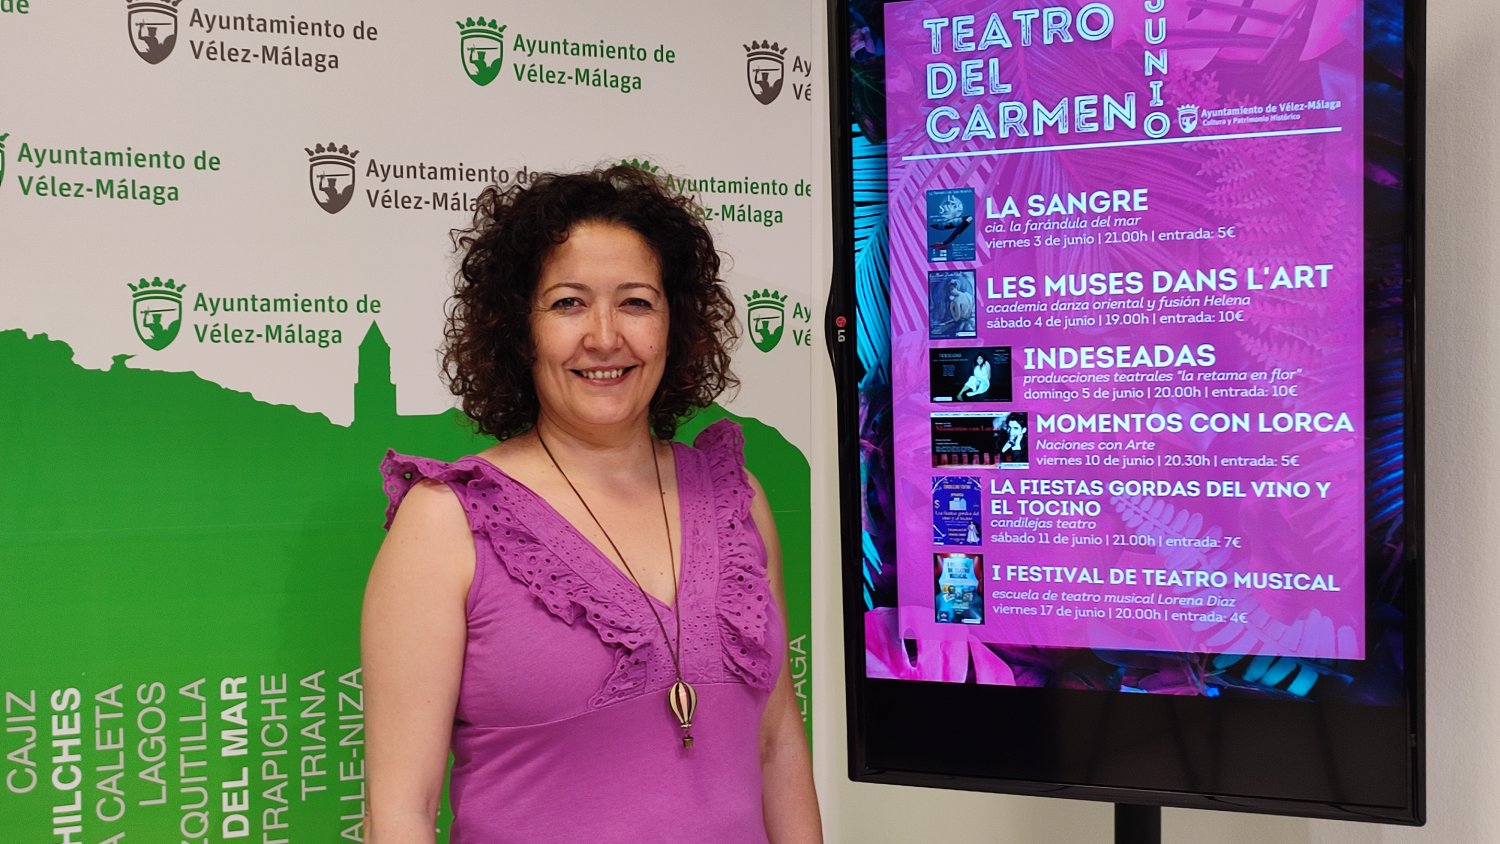 Vélez-Málaga presenta la programación del Teatro del Carmen para el mes de junio